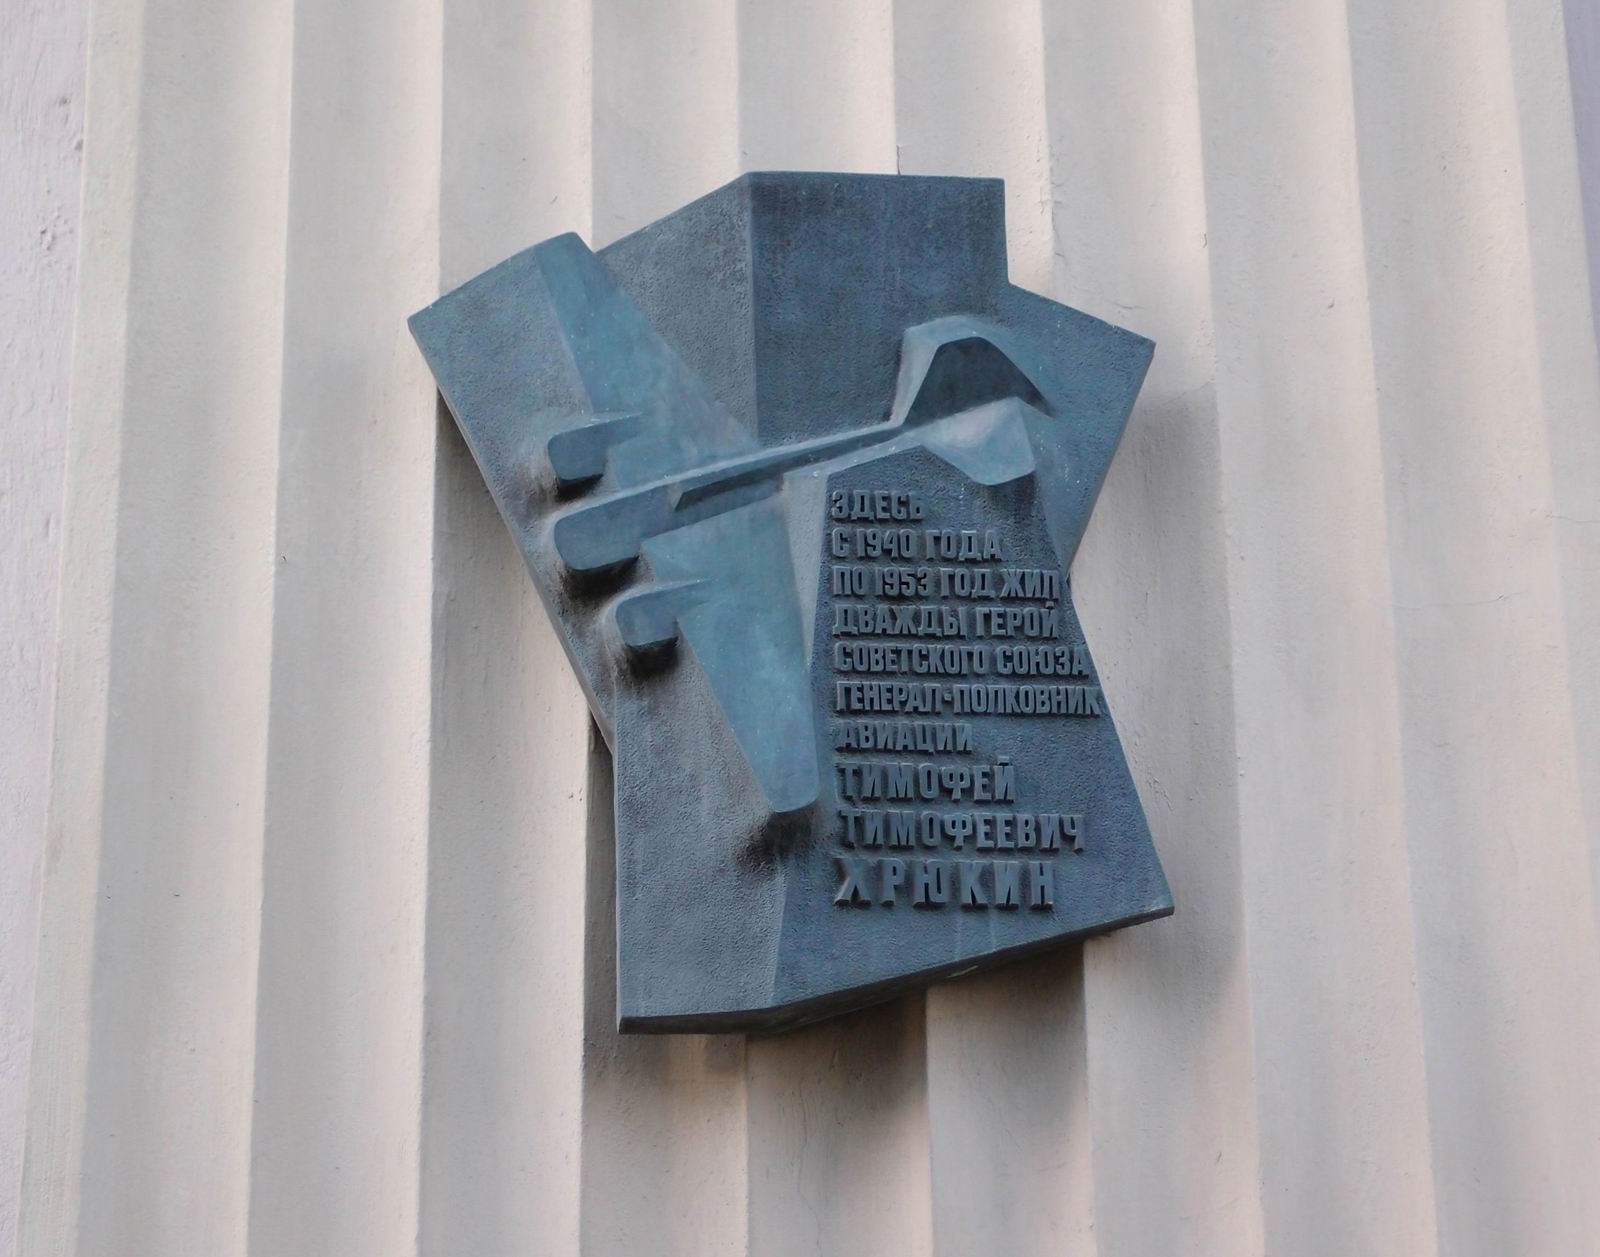 Мемориальная доска Хрюкину Т.Т. (1910-1953), арх. С.В.Клепиков, в Лубянском проезде, дом 17, открыта 11.6.1982.